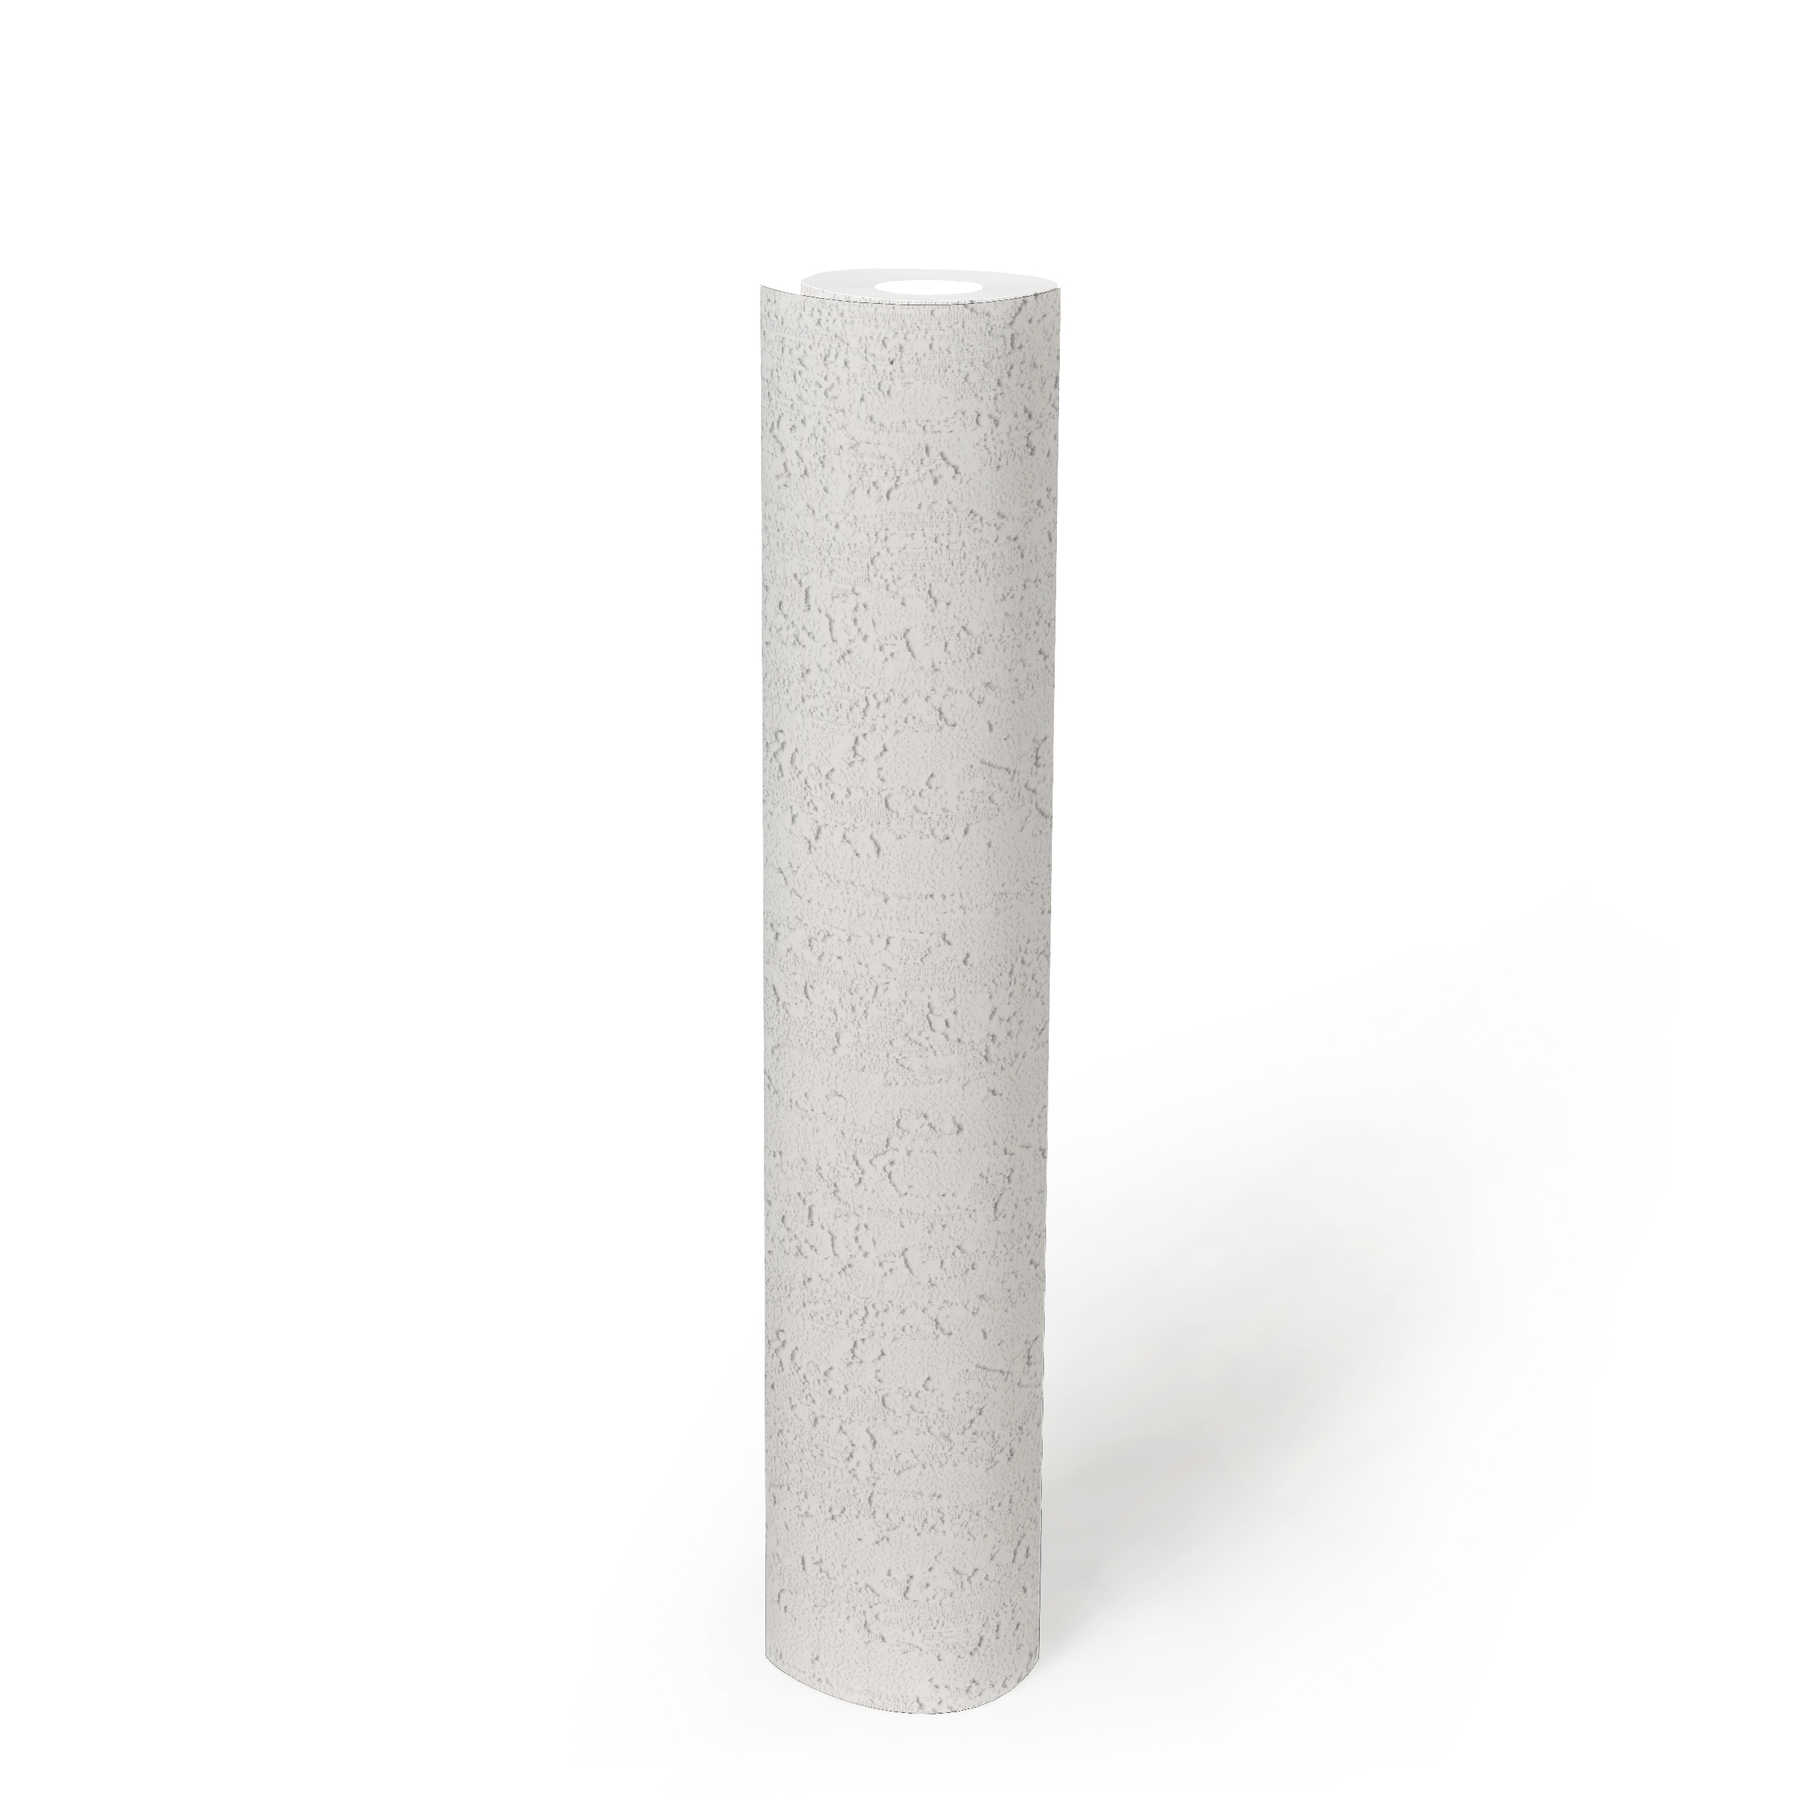             Wit behang met structuur in ruwe gipslook - wit
        